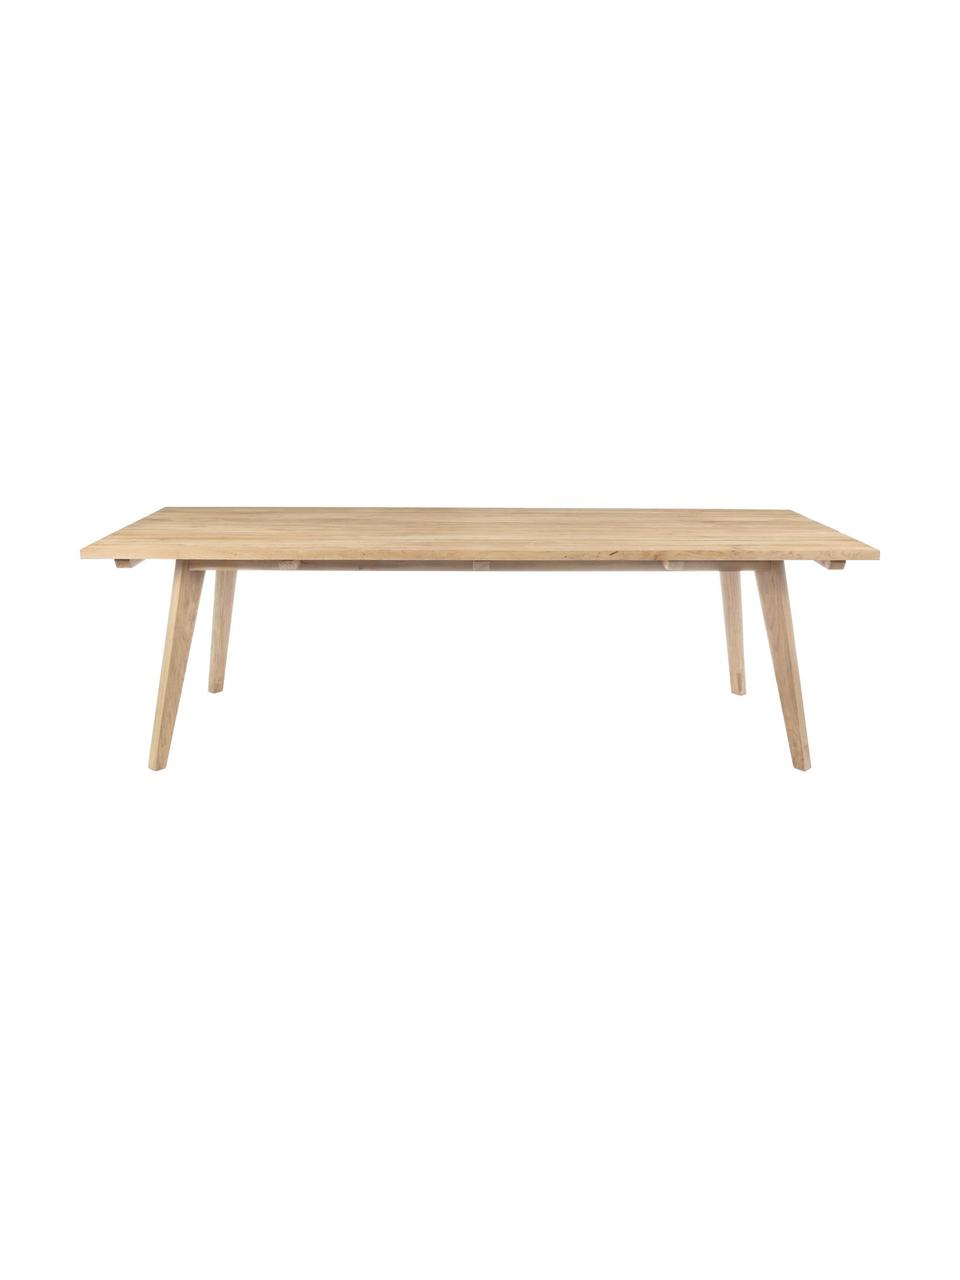 Tavolo da giardino in legno Kendari, Tek riciclato e non trattato
Certificati FSC, Teak, Larg. 260 x Alt. 100 cm